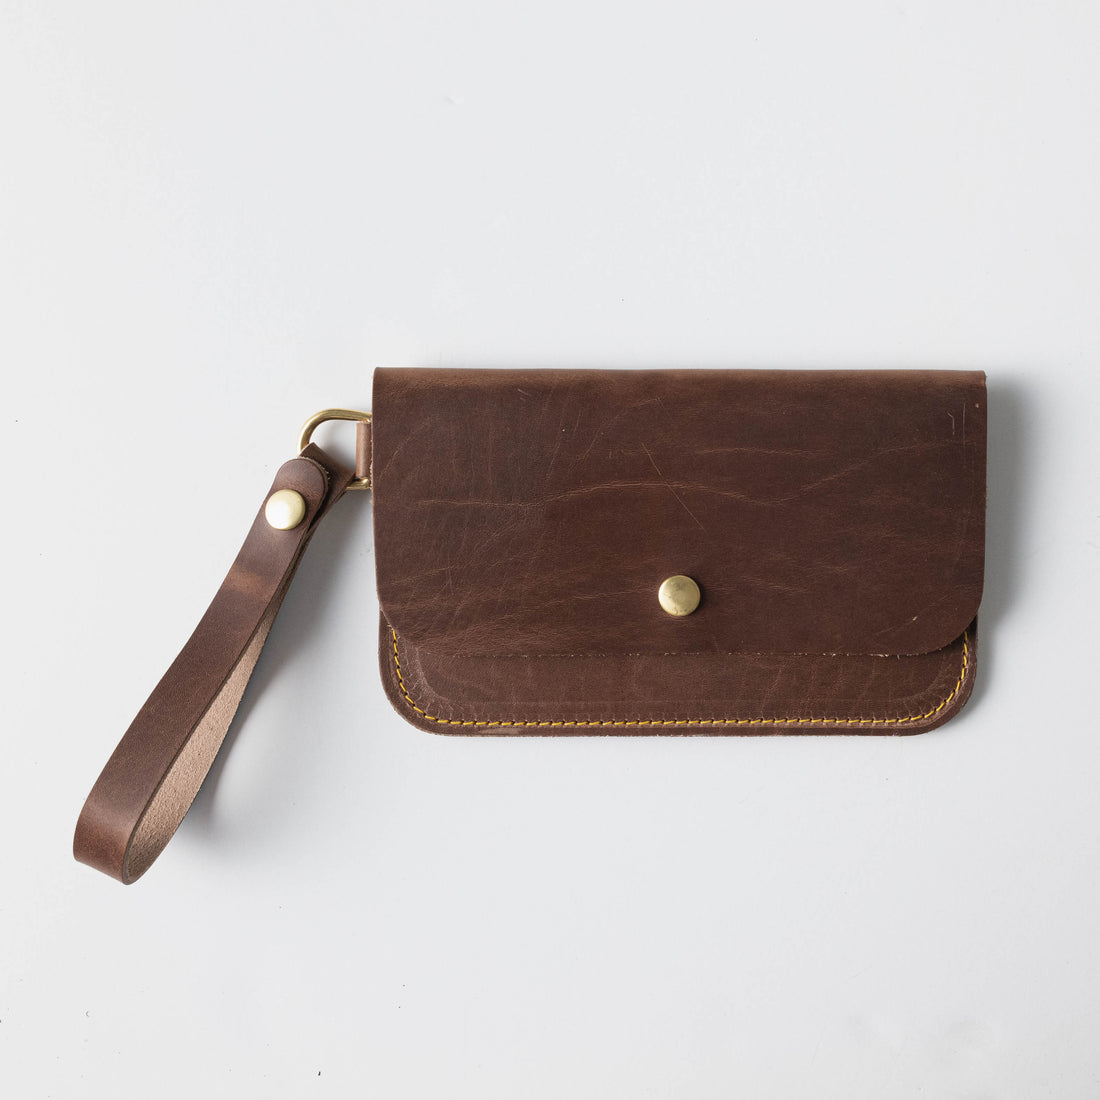 KMM & Co. Leather Tassel Keychain